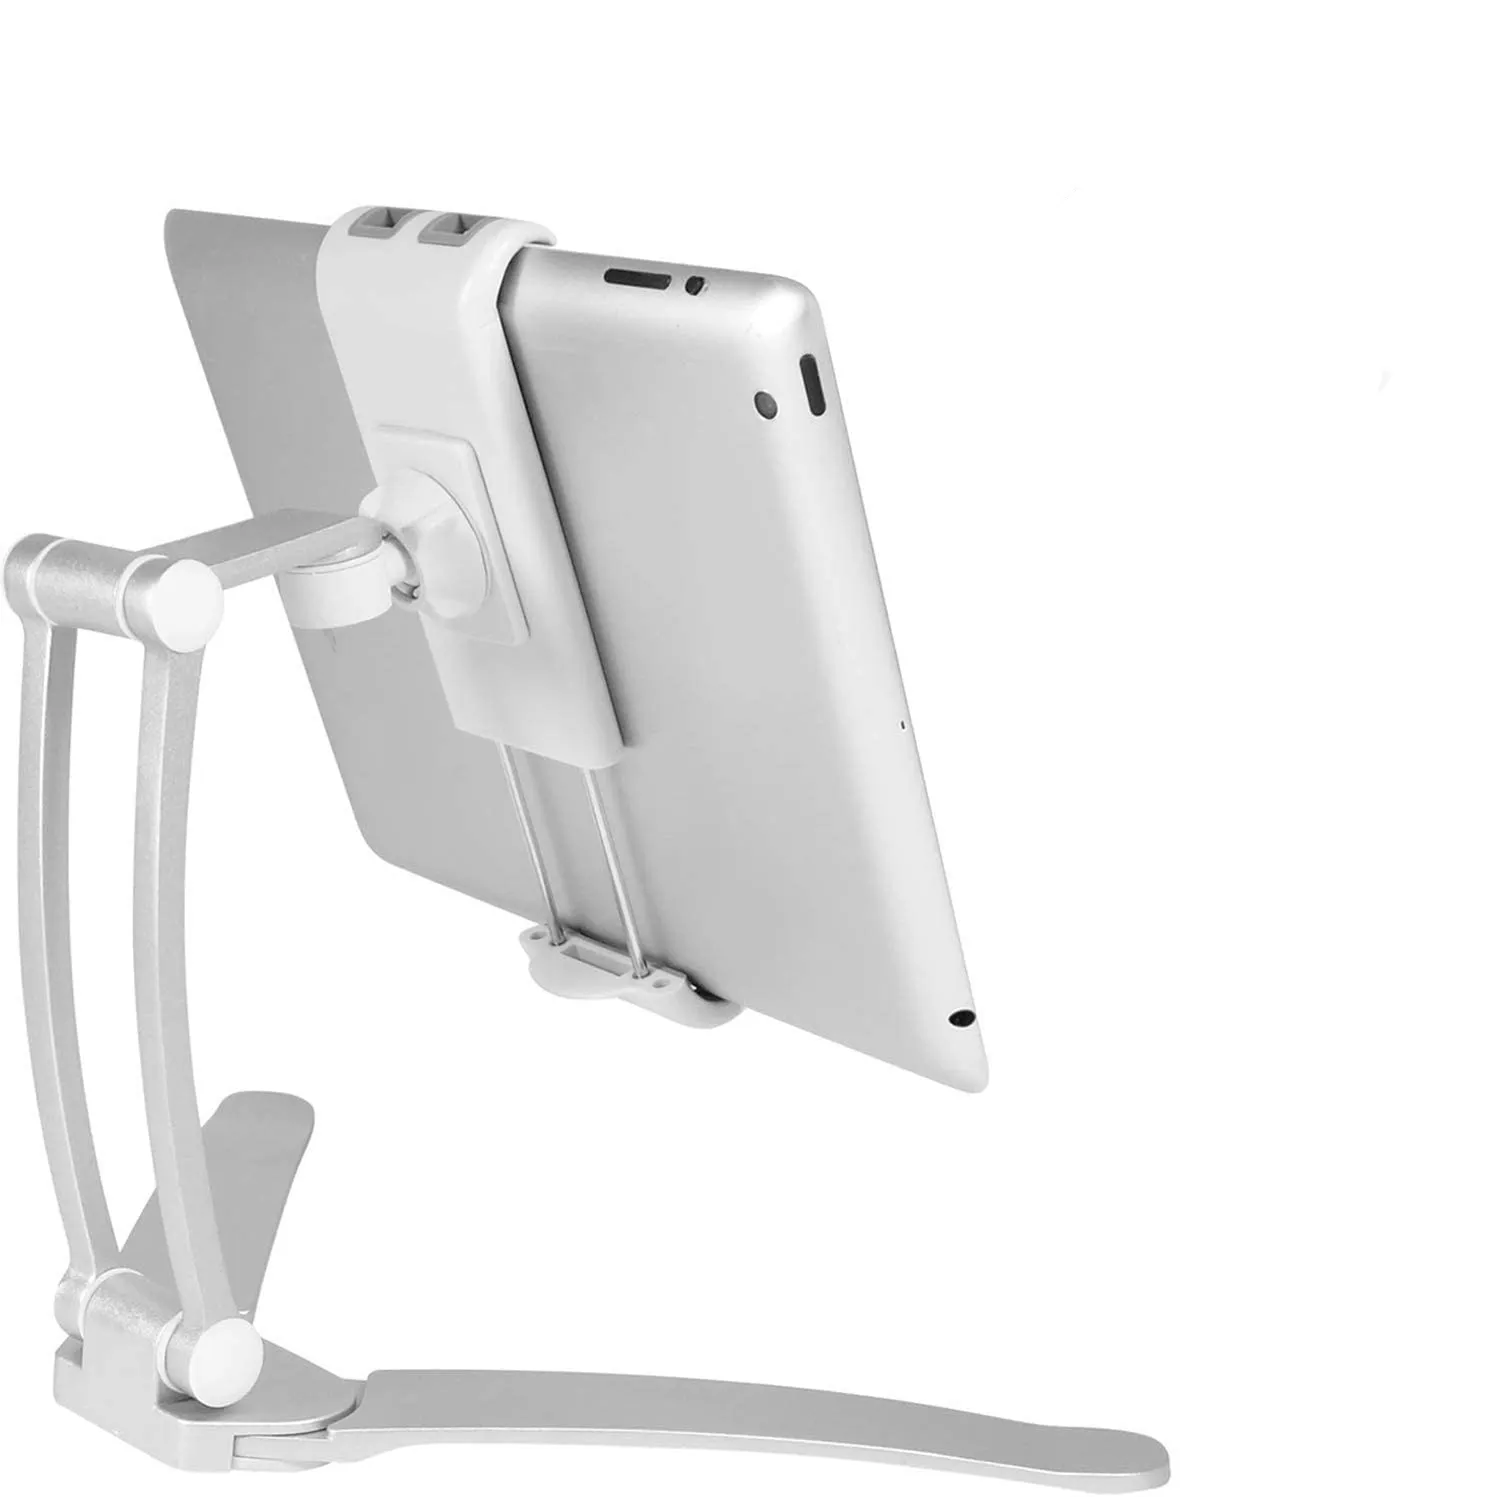 Macally 2-In-1 Keuken Tablet Stand & Ipad Wall Mount/Onder Kabinet Houder-Perfect Voor recept Lezen Op Aanrecht Of Gebruik